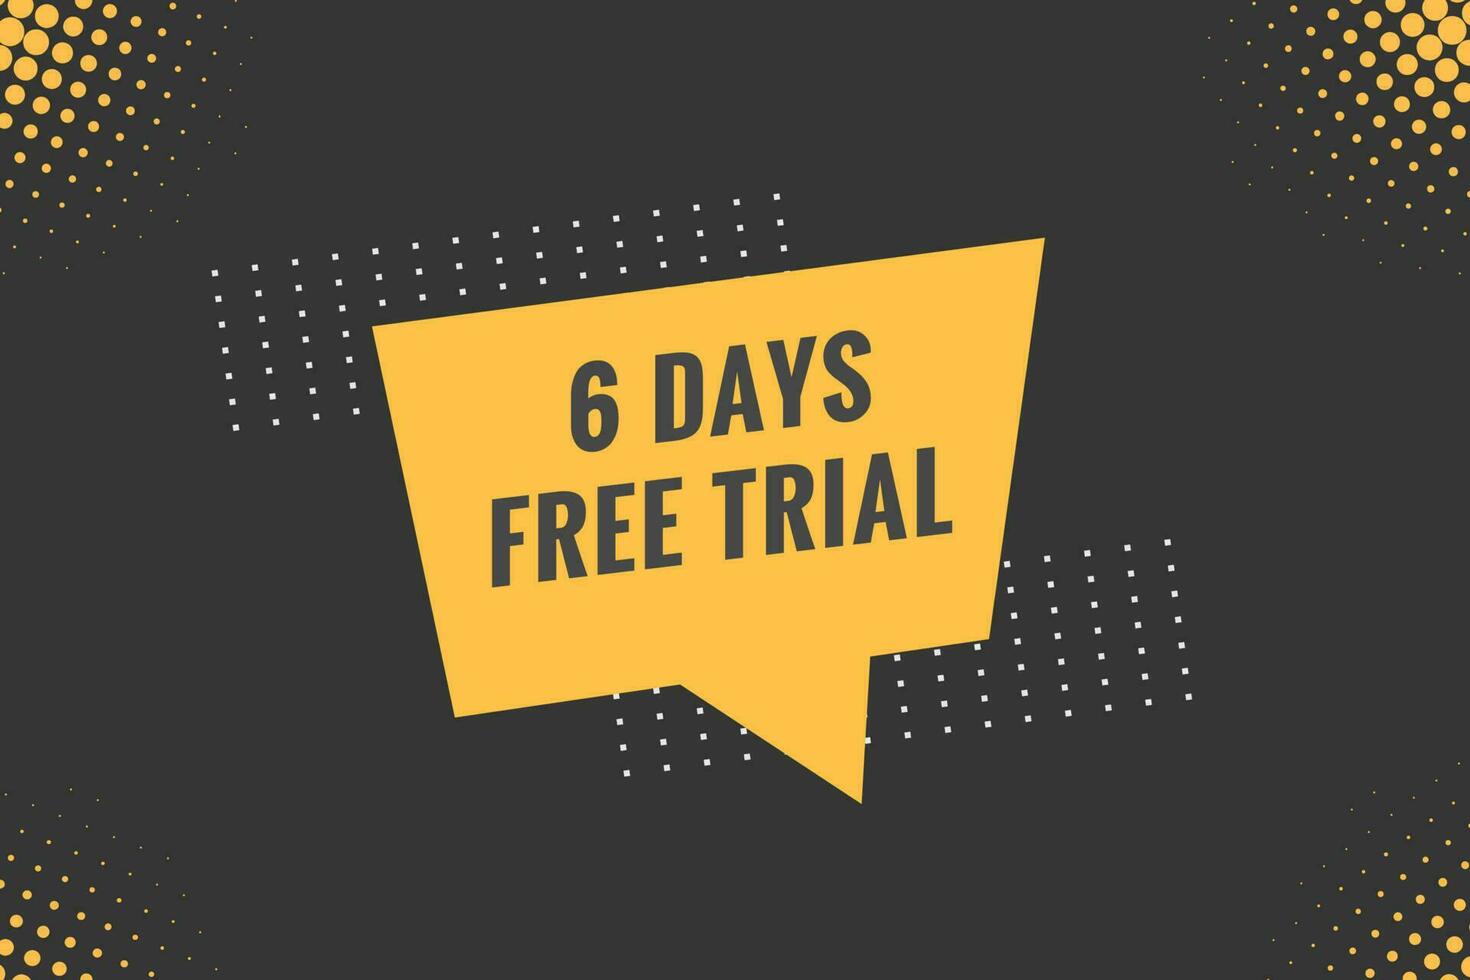 6 journées gratuit procès bannière conception. 6 journée gratuit bannière Contexte vecteur